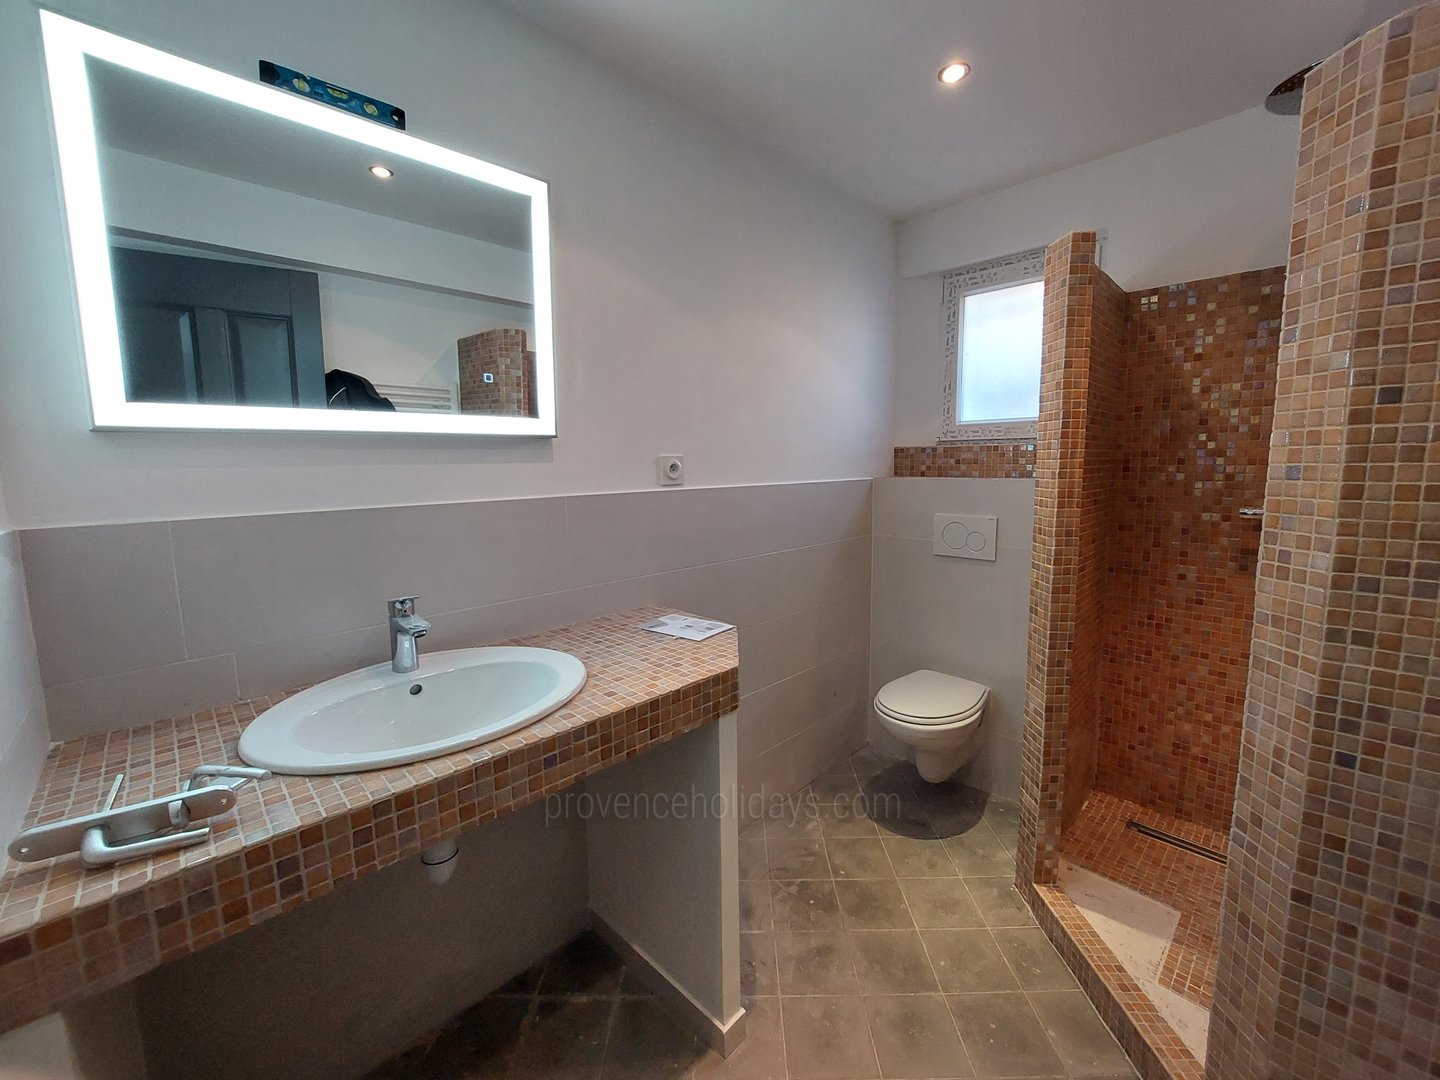 29 - La Maison de Village: Villa: Bathroom - Bathroom 3 Guest House